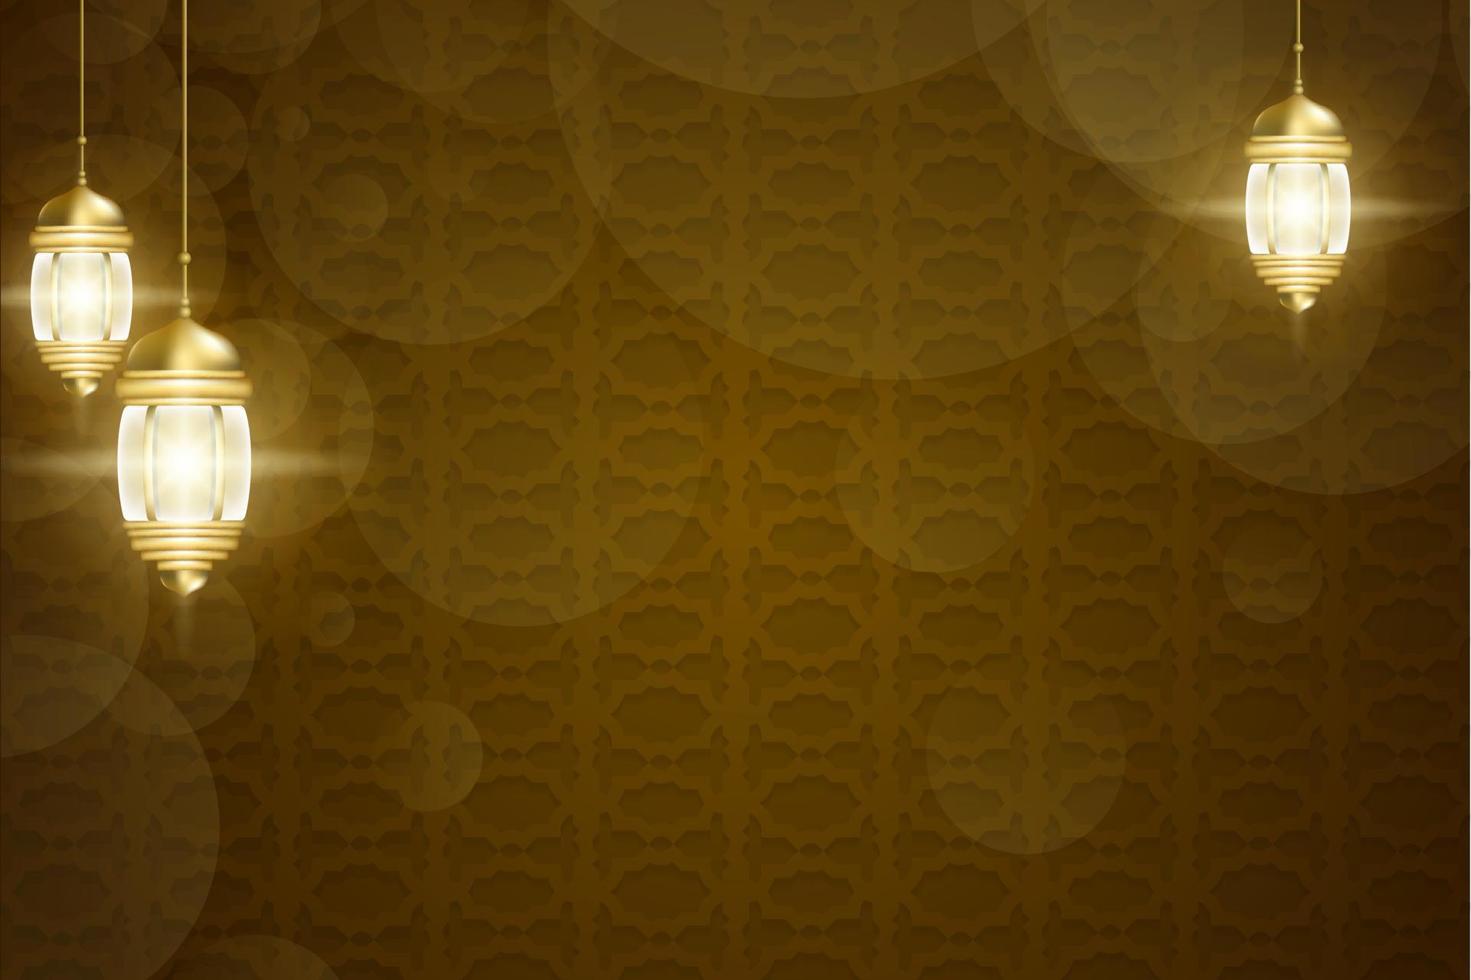 vlak Arabisch patroon achtergrond met gouden lantaarn vector